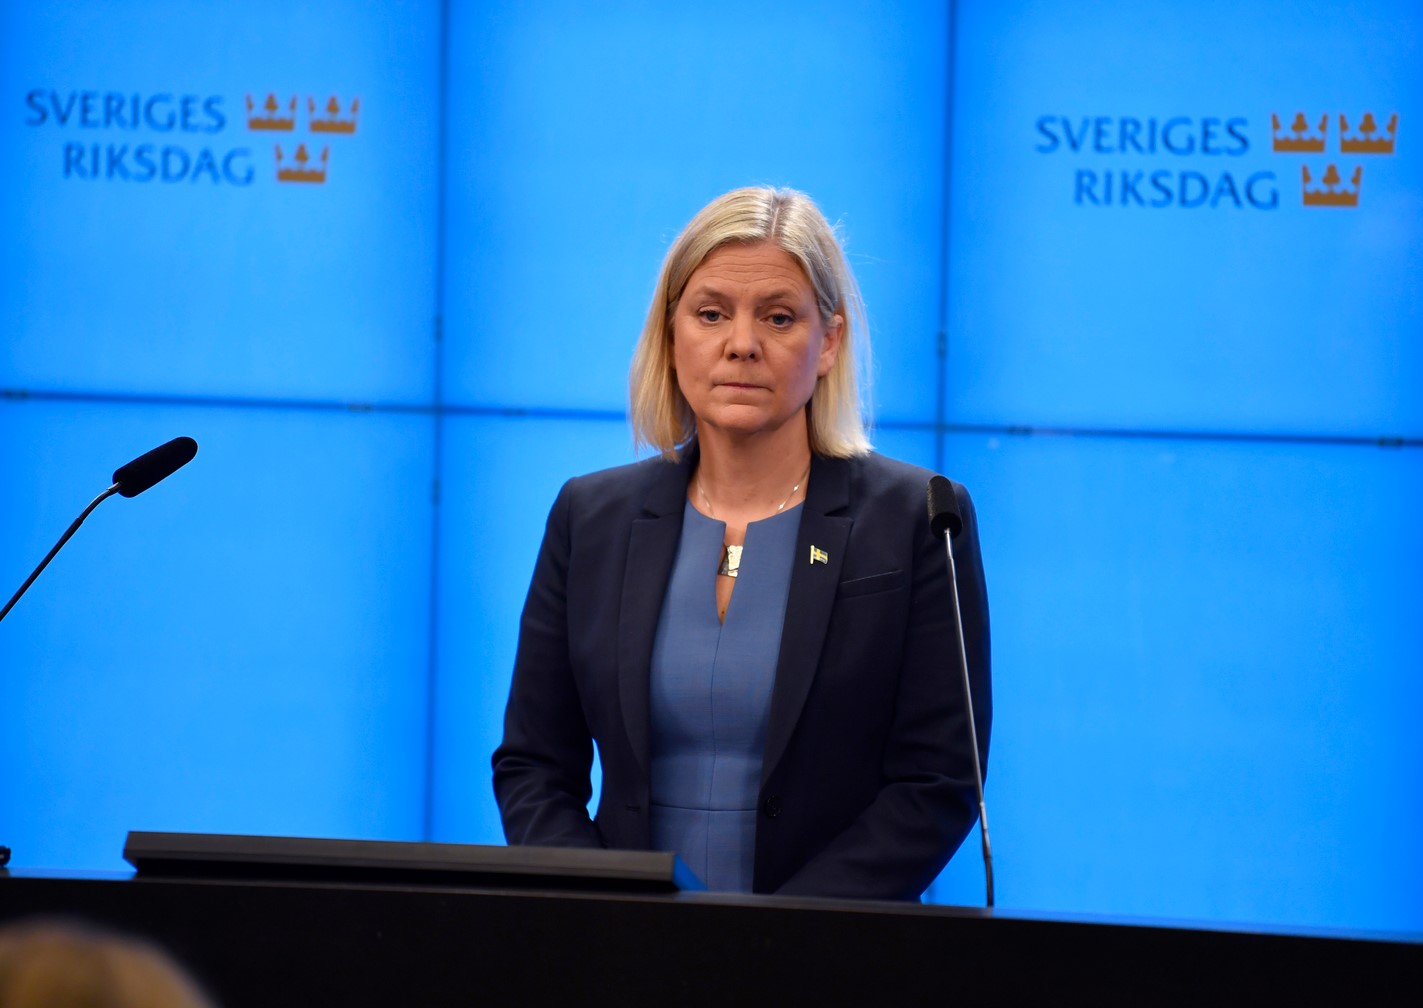 Правителството на Швеция ще компенсира фирми и домакинства с над 5,77 милиарда долара поради скъпия ток